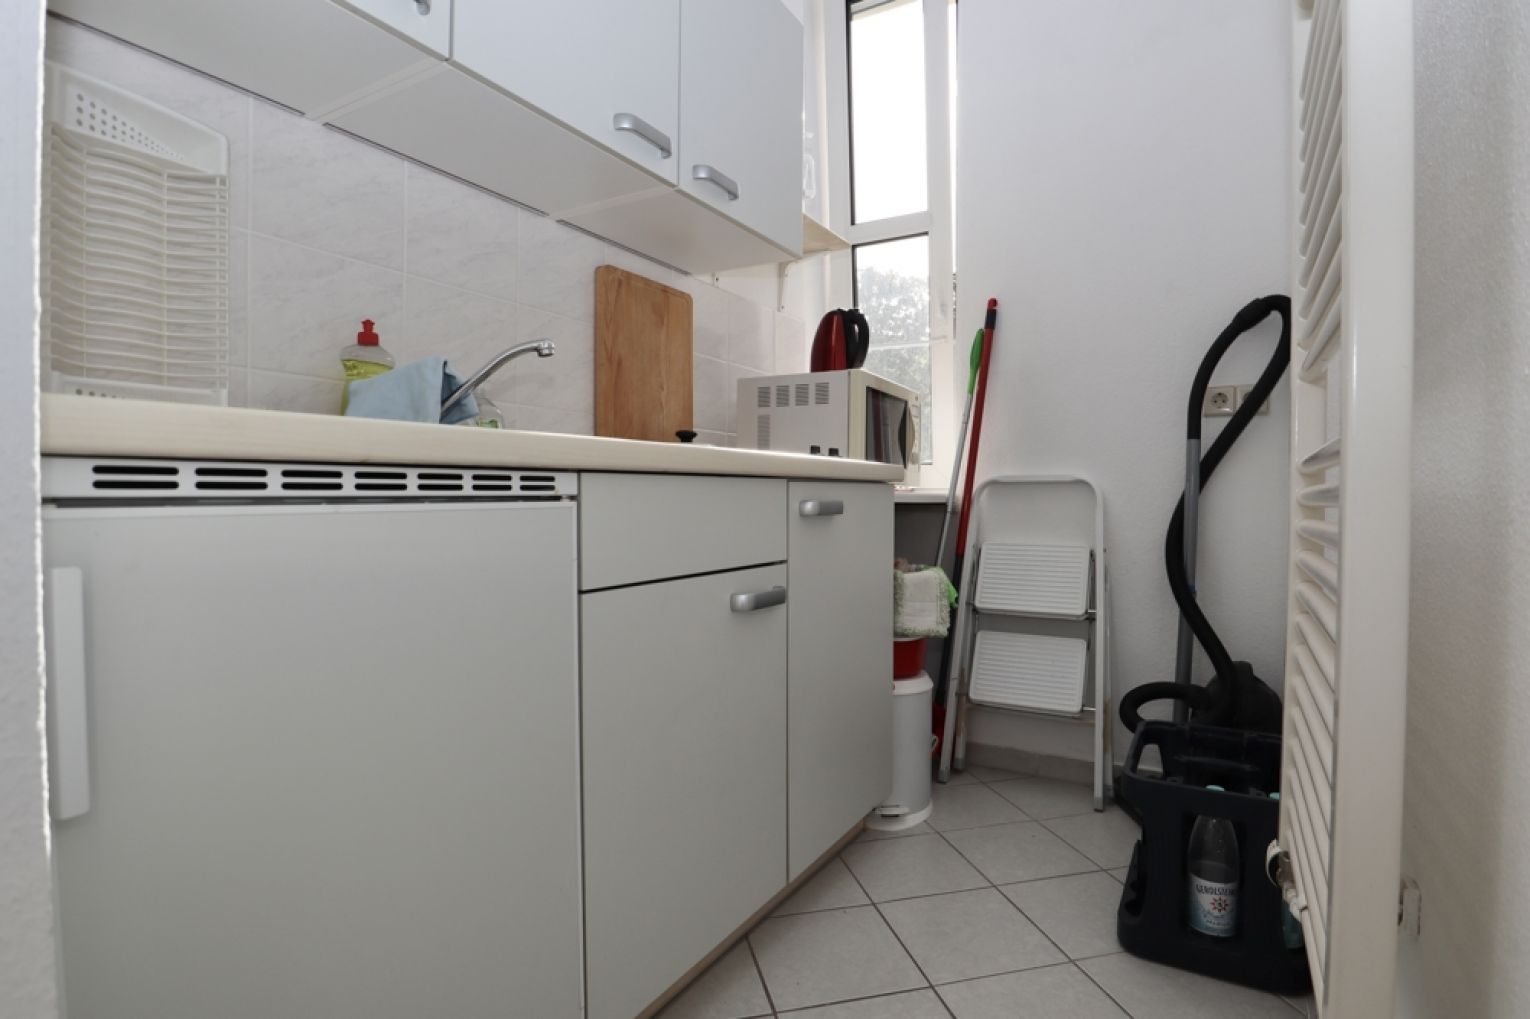 Kappel • 1 Zimmer • Chemnitz • möbliert • Einbauküche • erste Wohnung • jetzt Termin vereinbaren